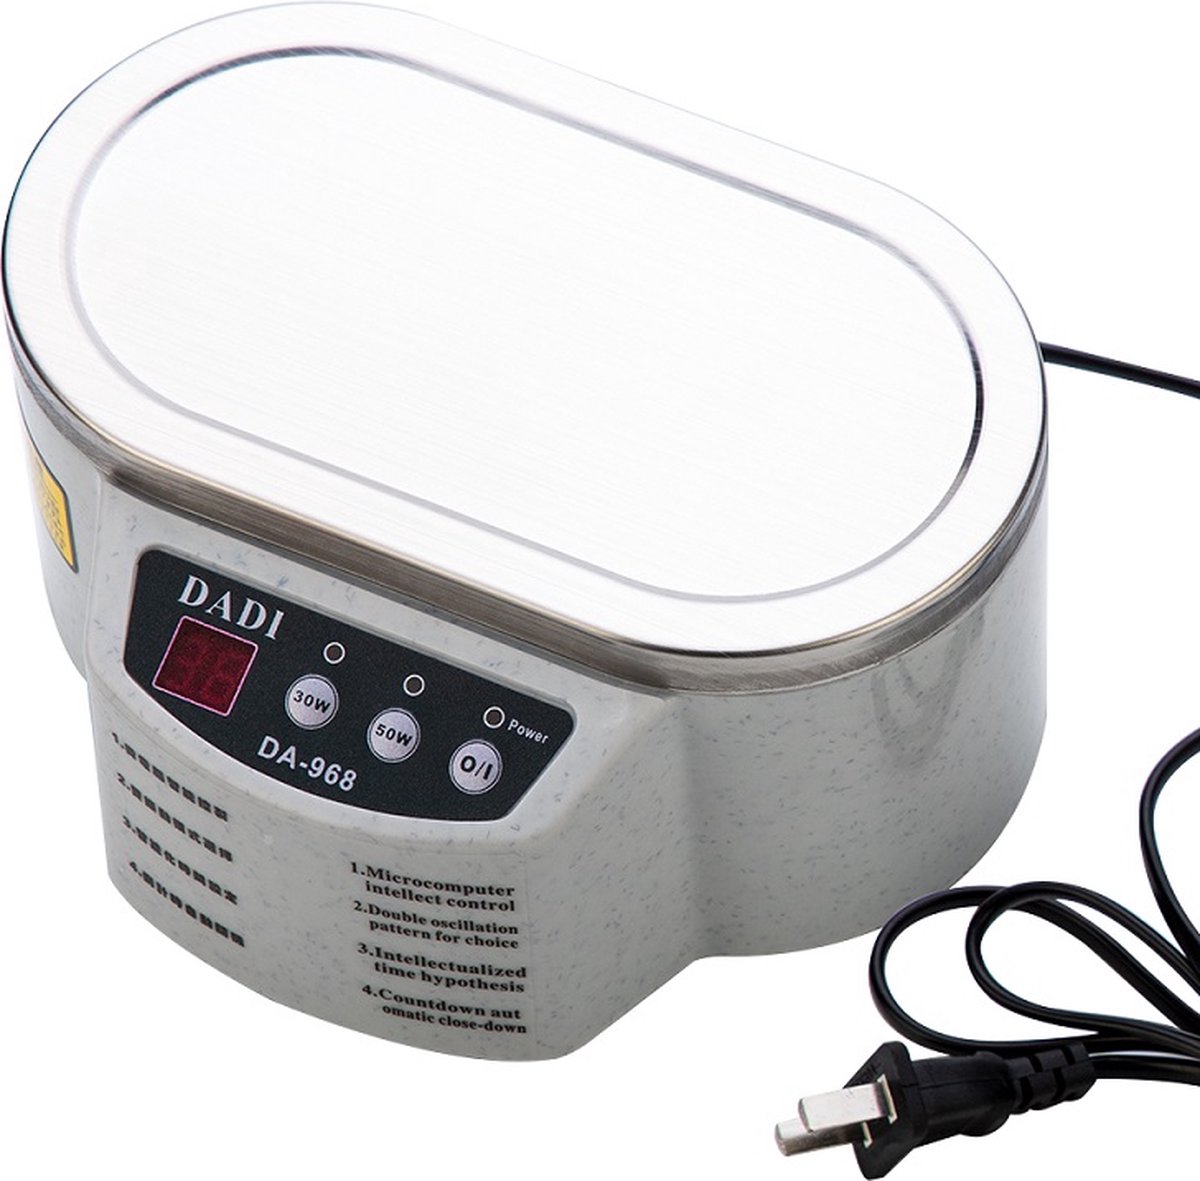 Nettoyeur à ultrasons Modito - 600 ml - Appareil de nettoyage pour